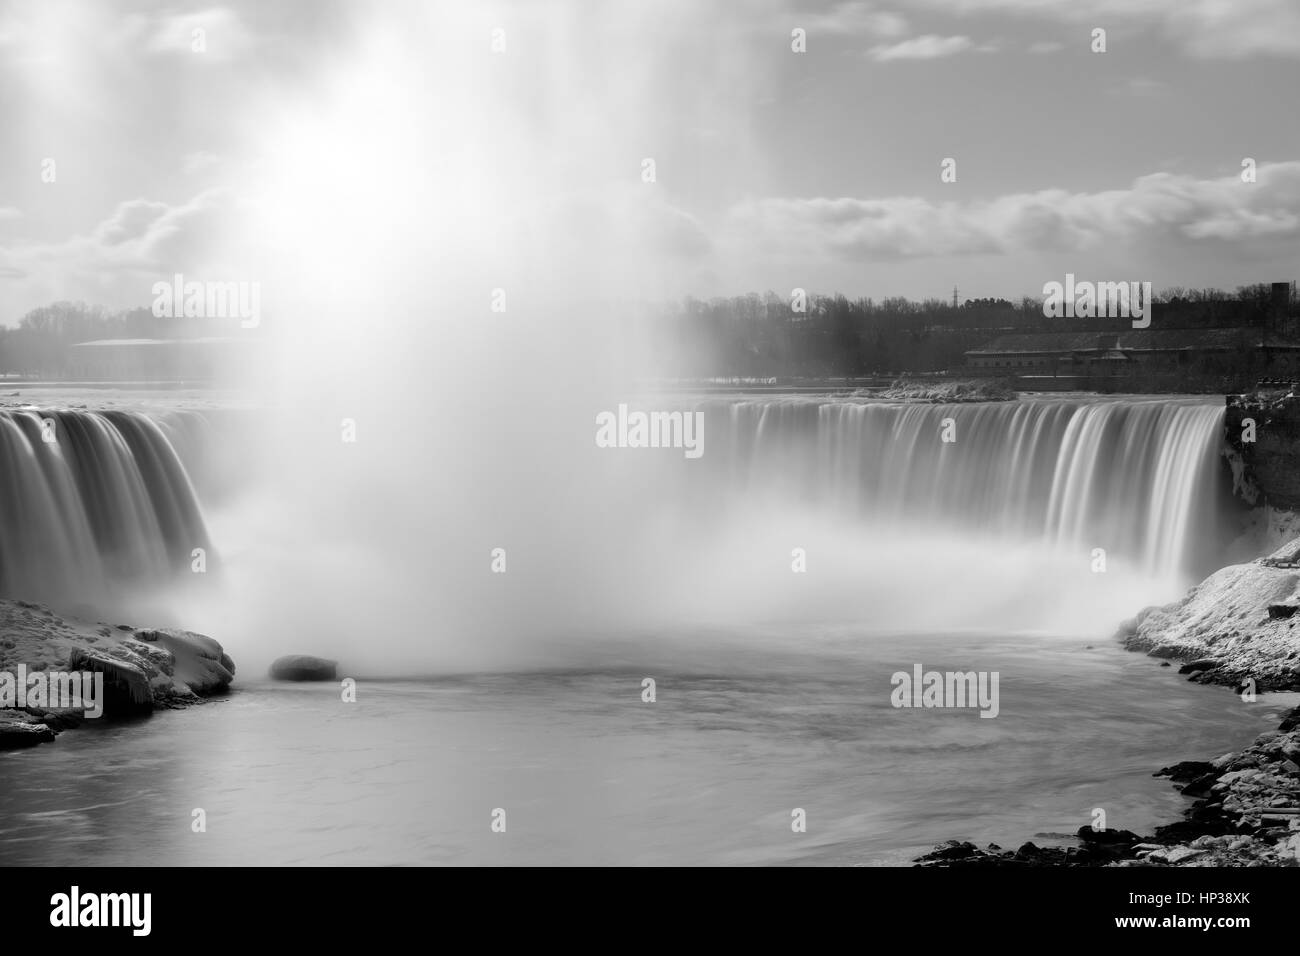 Haut contraste noir et blanc image de Niagara Falls, Canada la hausse et brouillard rivière swift Banque D'Images